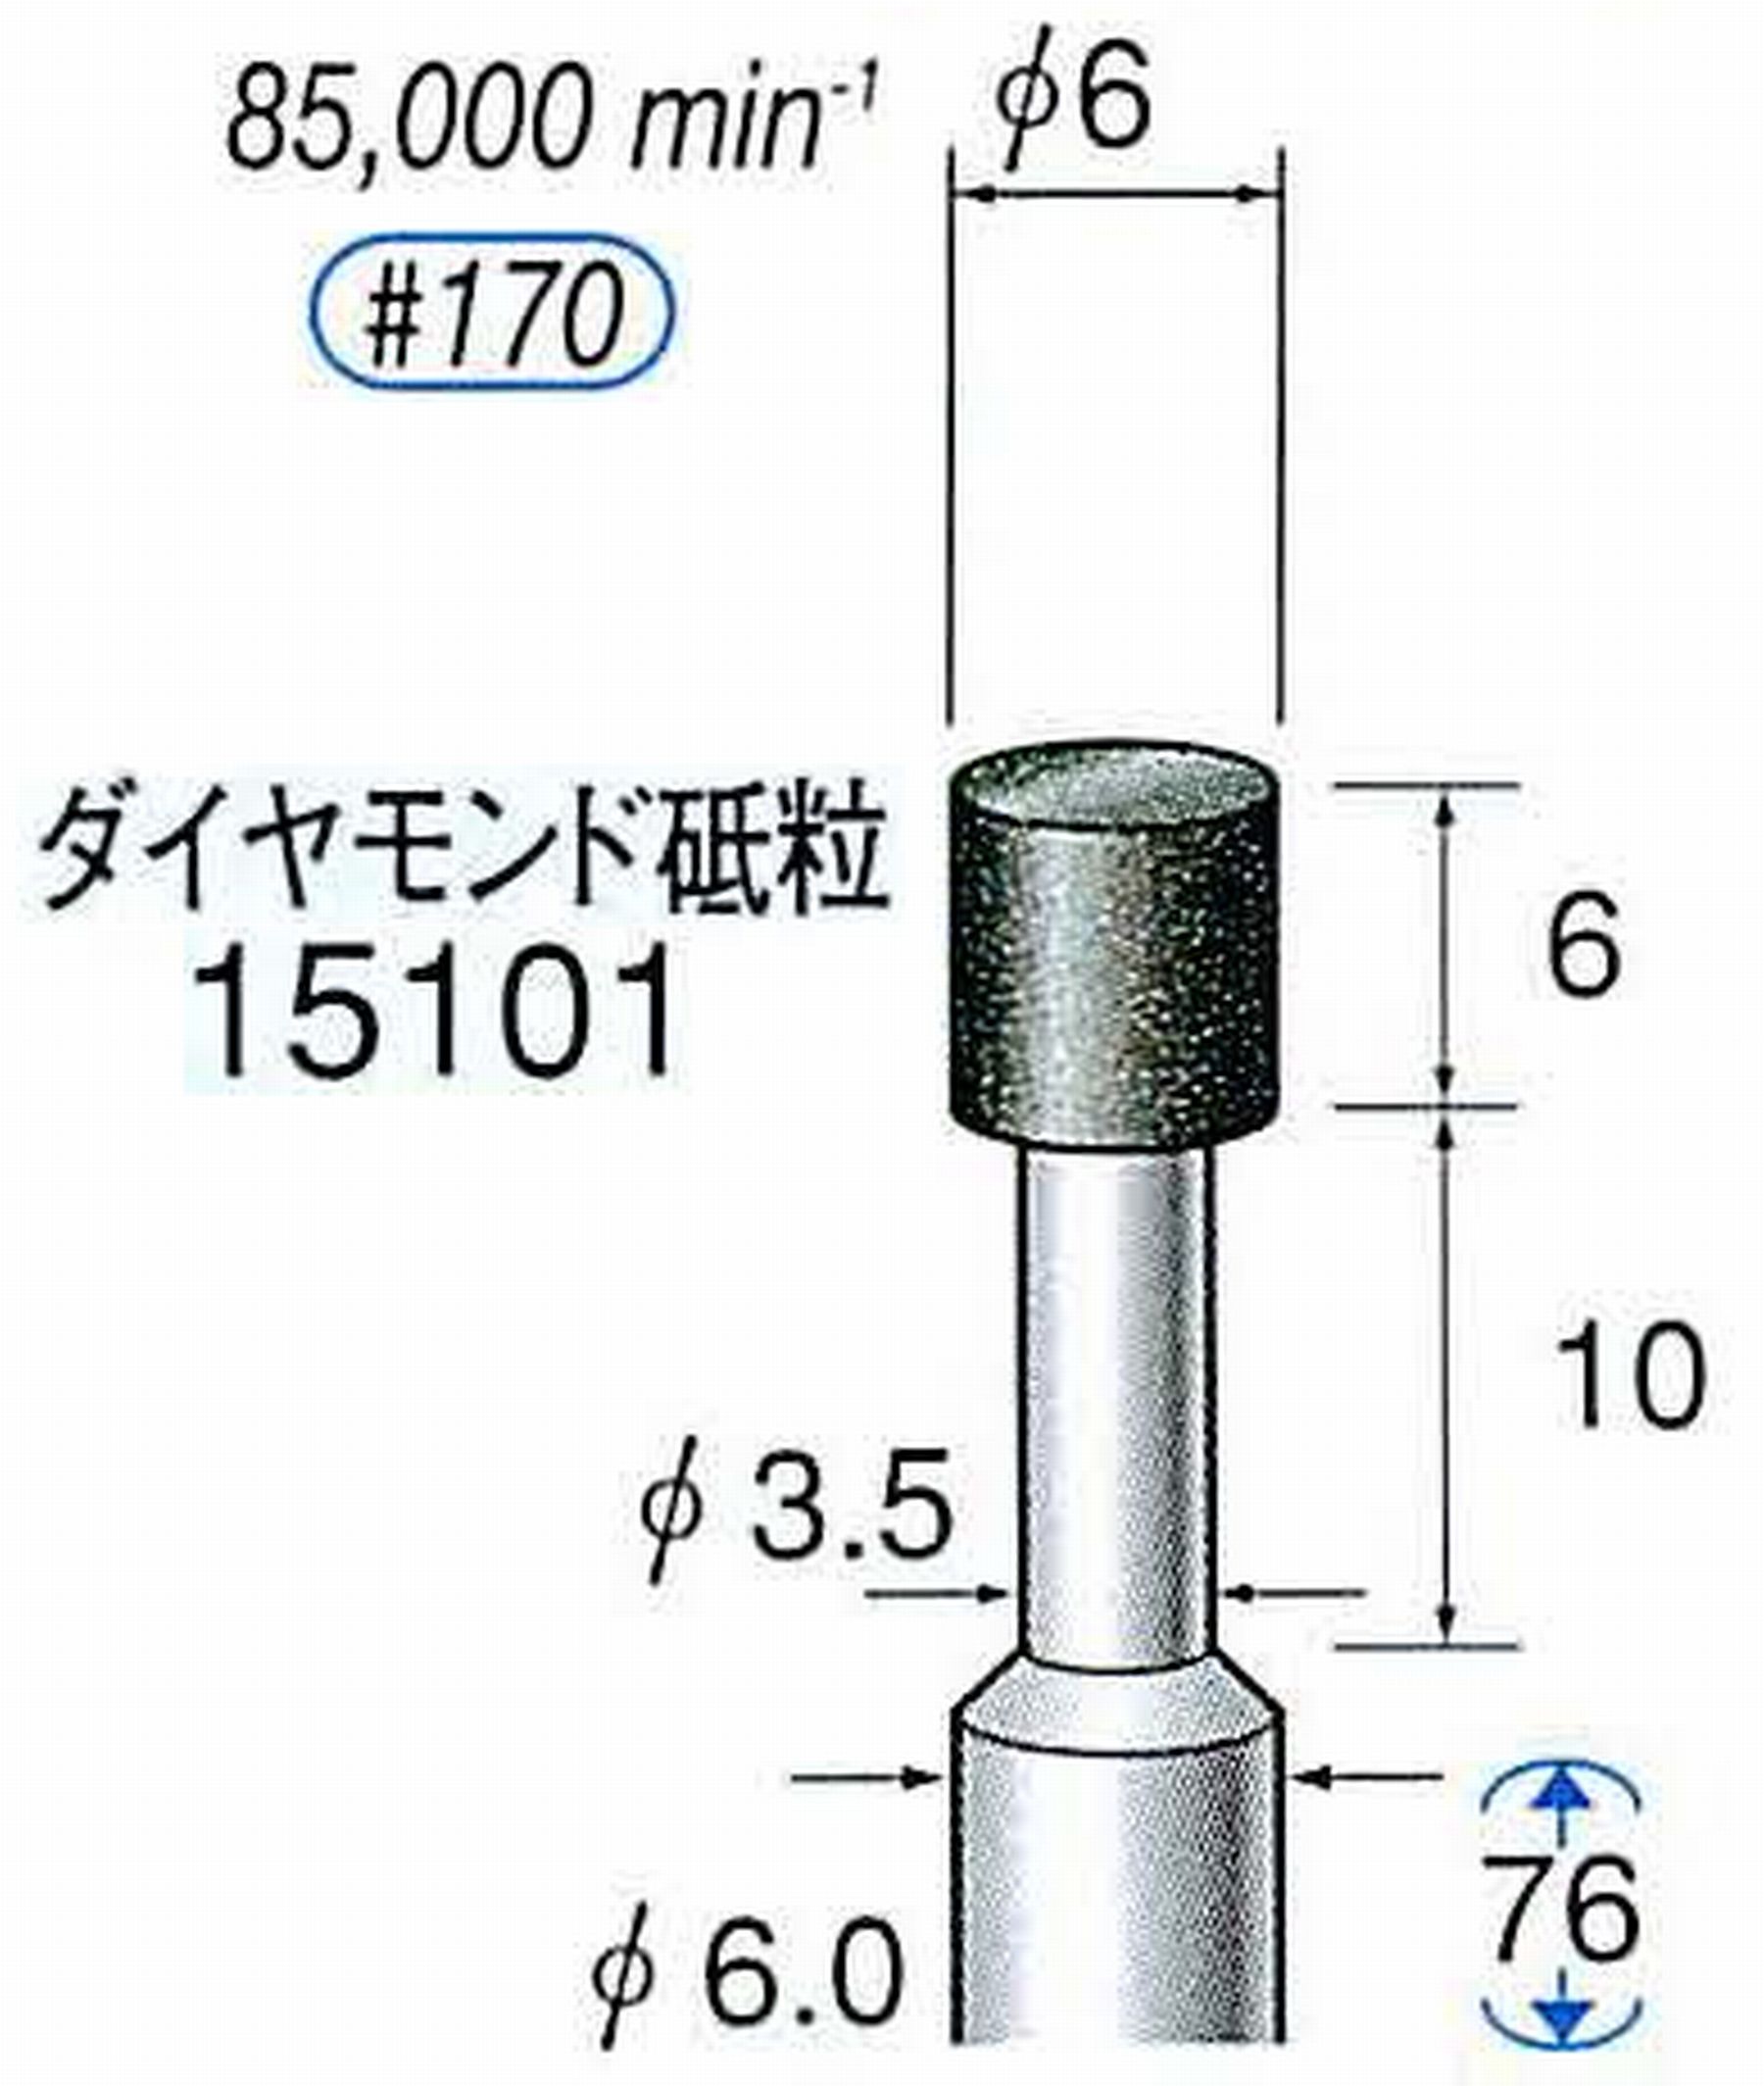 ナカニシ/NAKANISHI レジノイドダイヤモンド ダイヤモンド砥粒 軸径(シャンク)φ6.0mm 15101